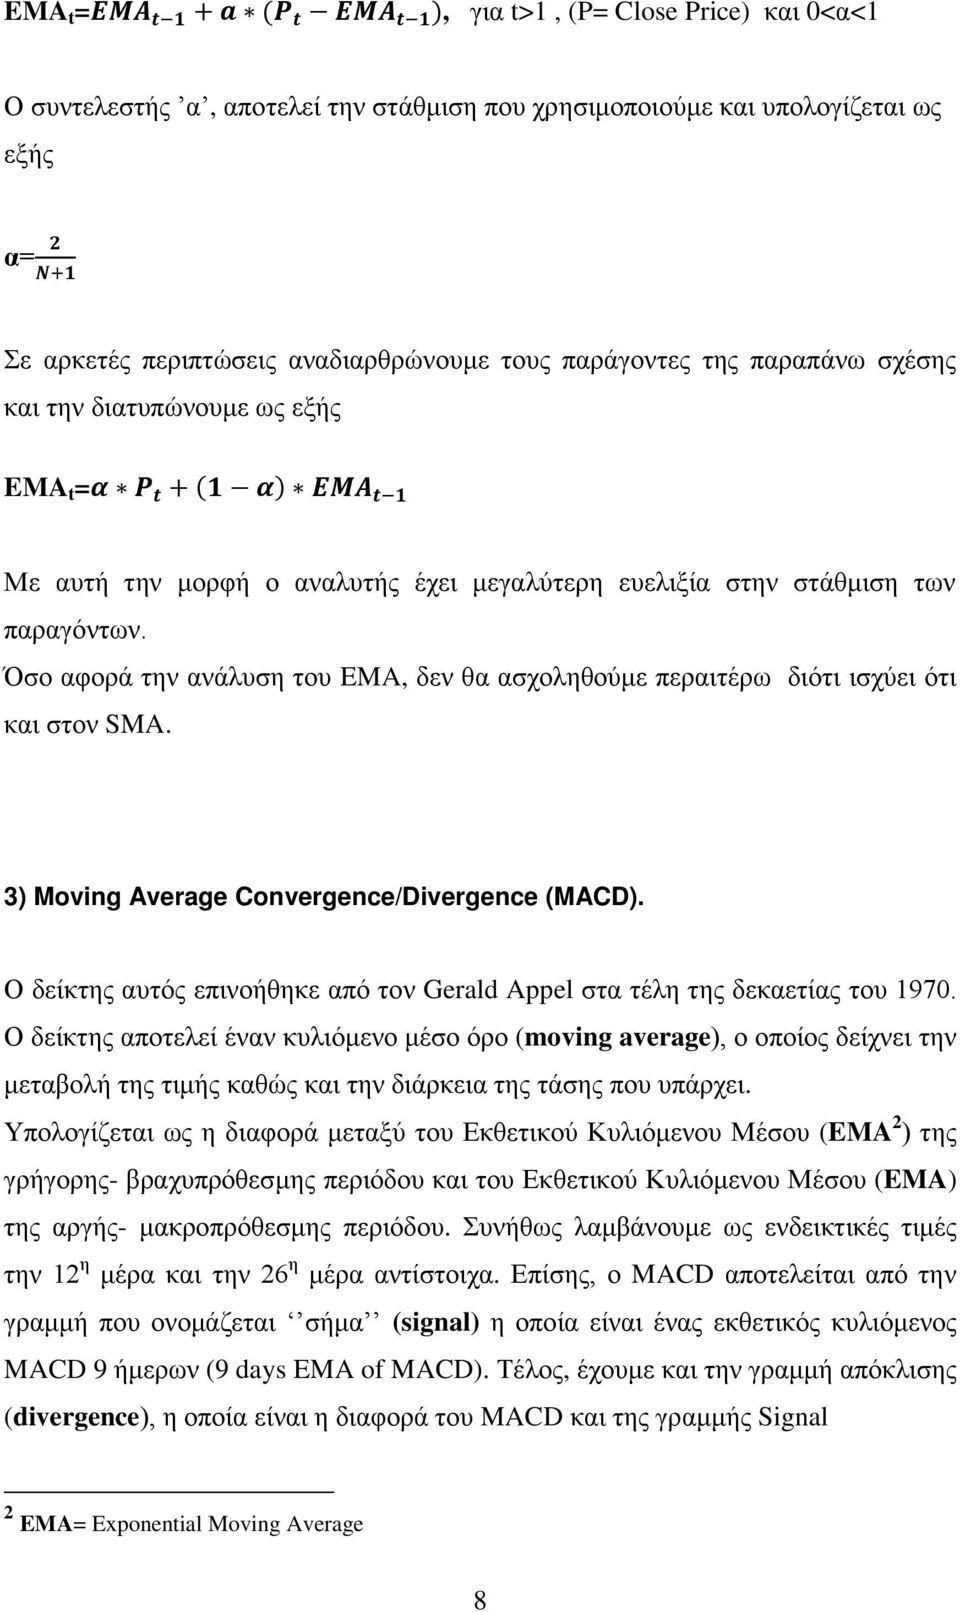 ξτ δνσ δν εαδ κθνsma. 3) Moving Average Convergence/Divergence (MACD).